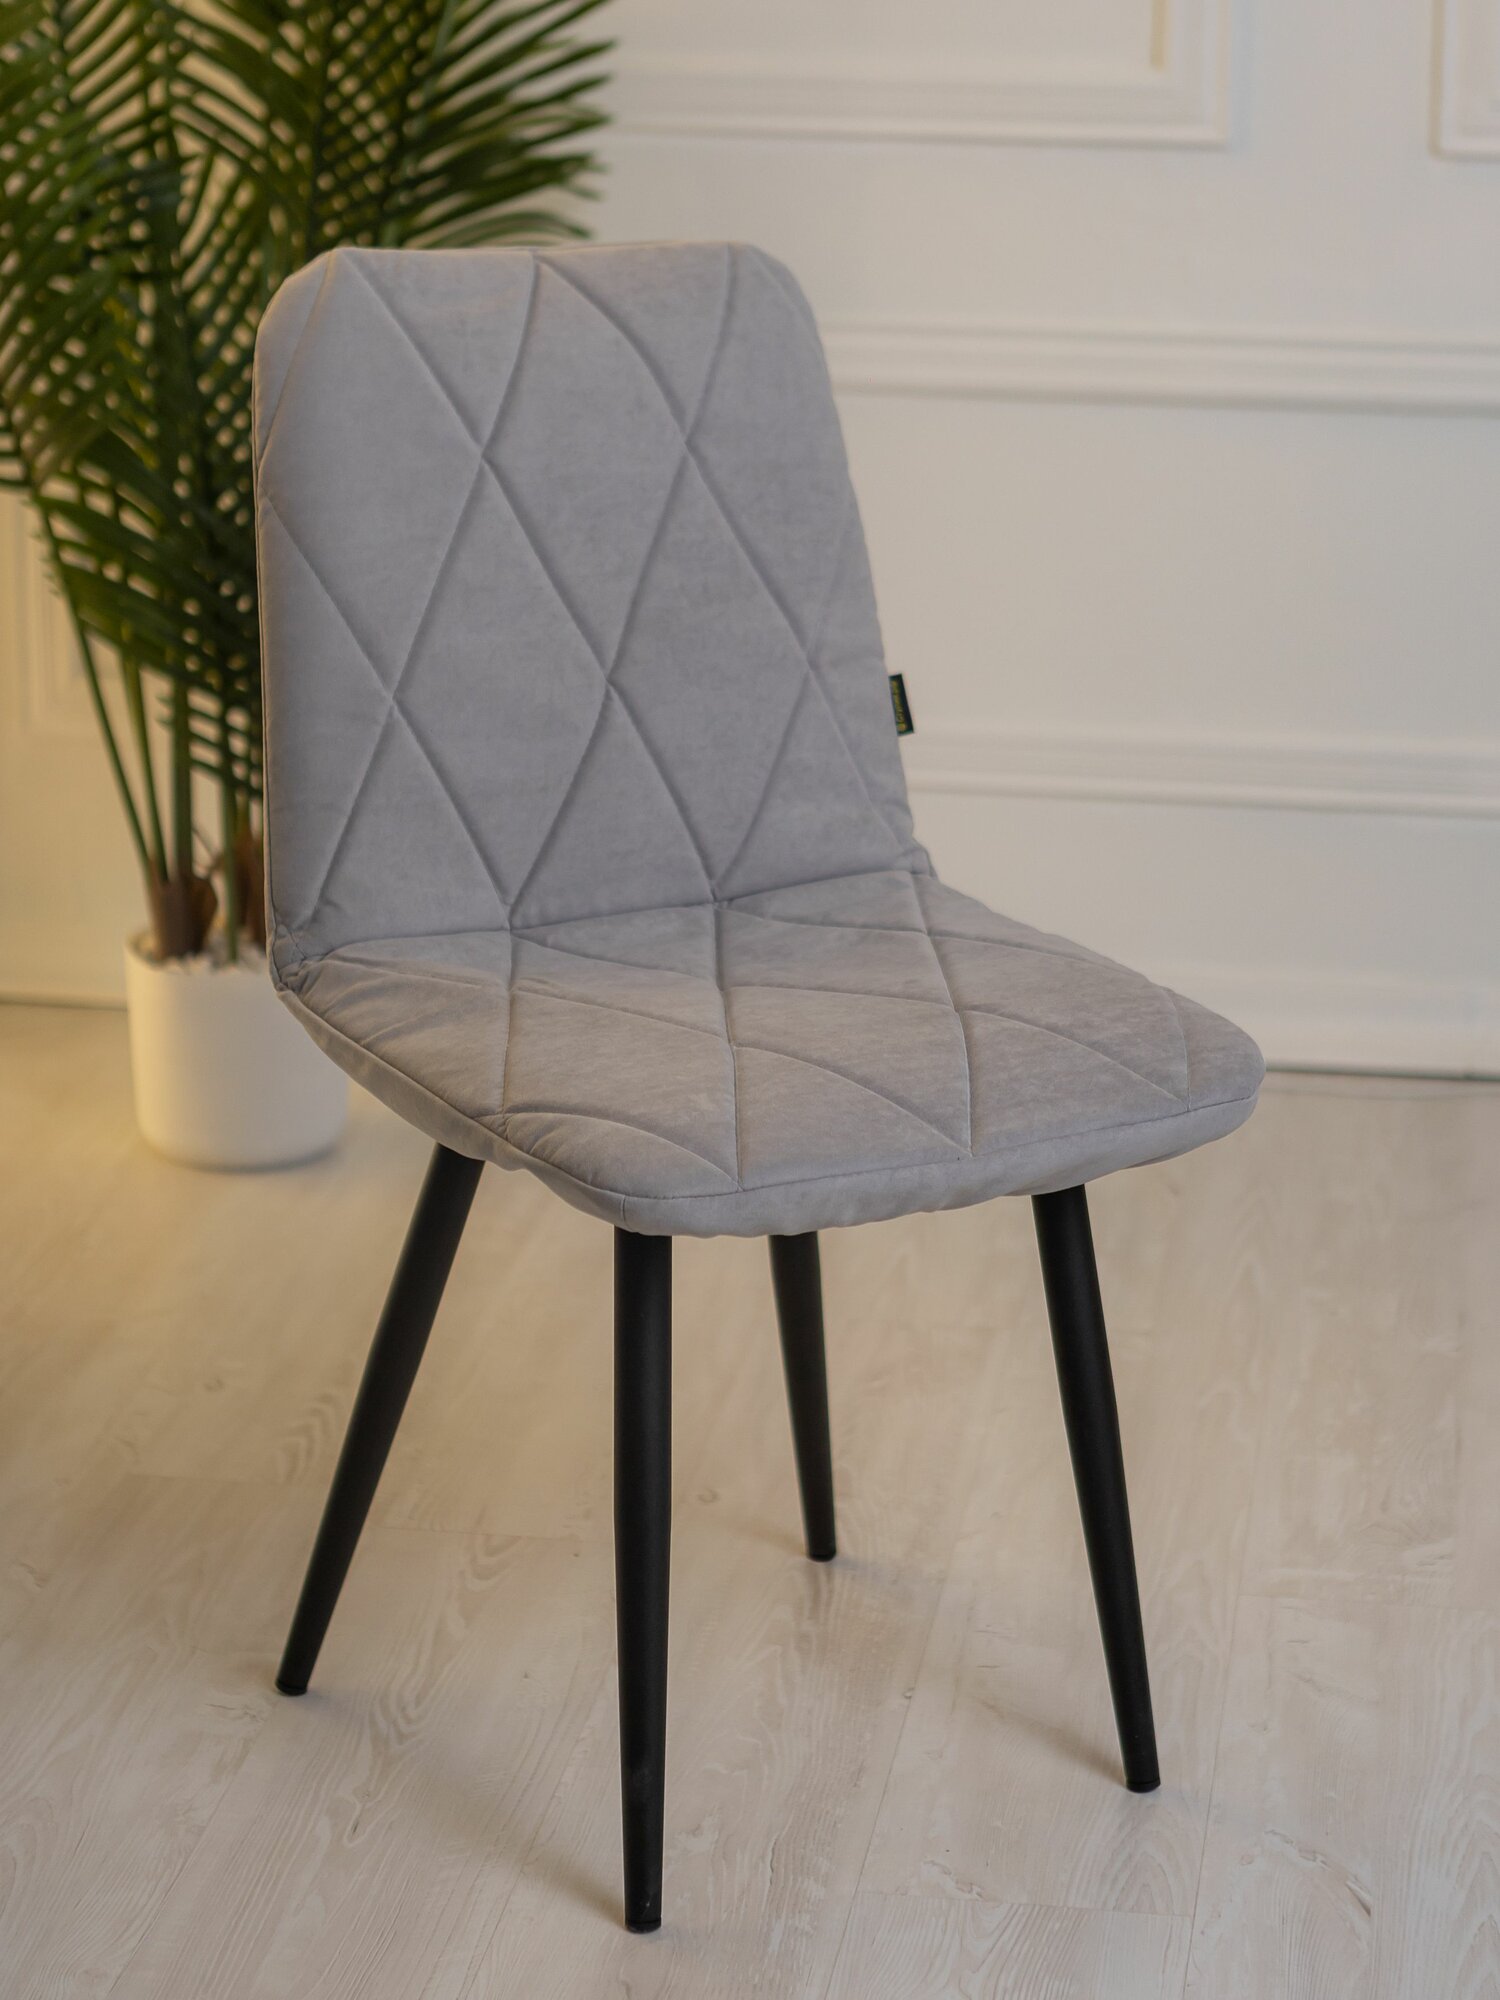 Комплект чехлов на стул со спинкой Тедди из велюра мятный прострочка квадрат 2 шт